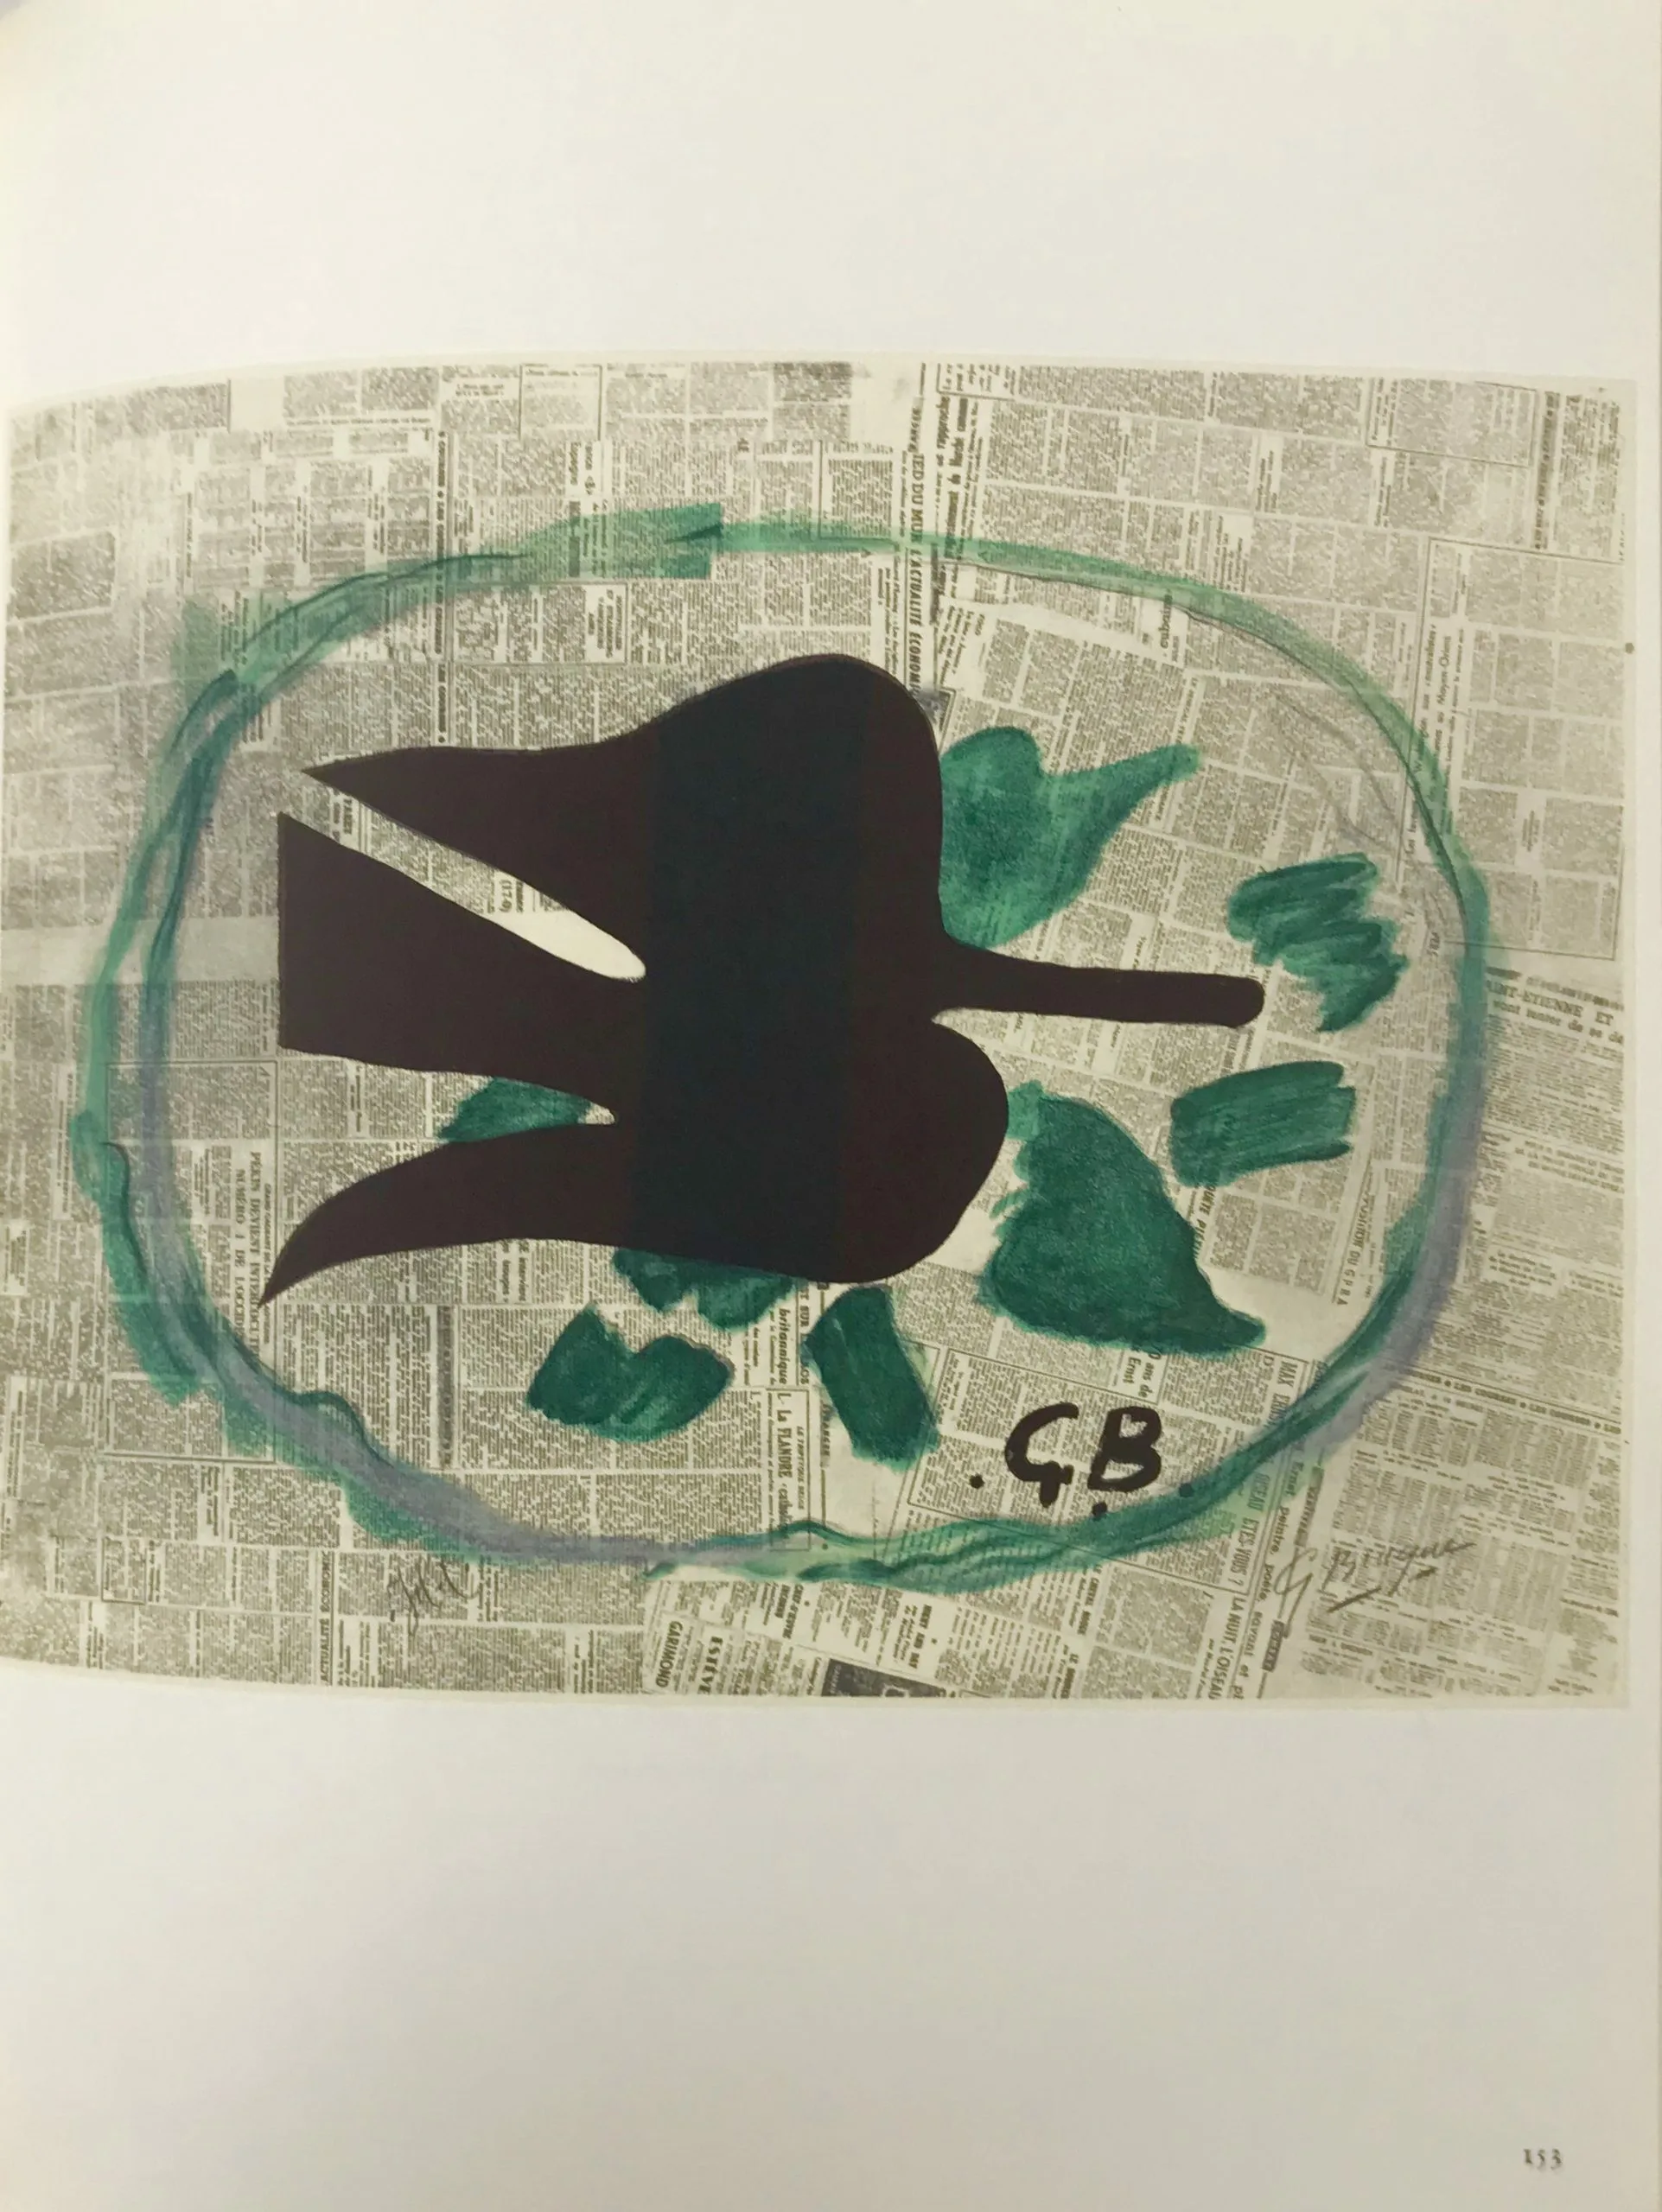 Braque Lithograph "l'oiseau dans le feuillage"1963 peinted Mourlot